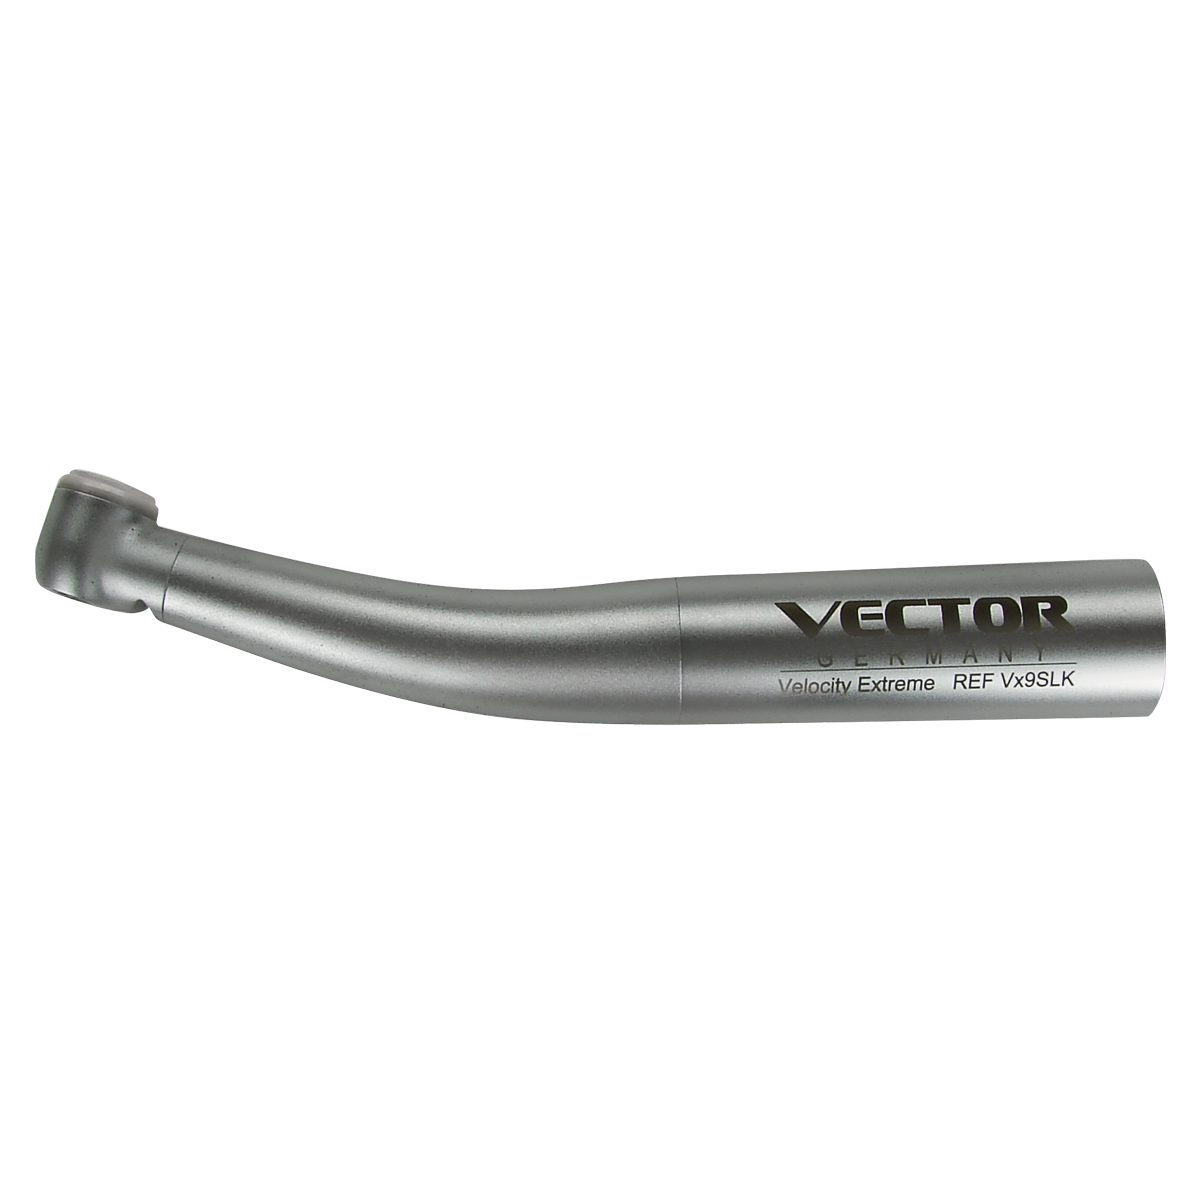 Velocity Extreme Vx9 Optic Handpiece